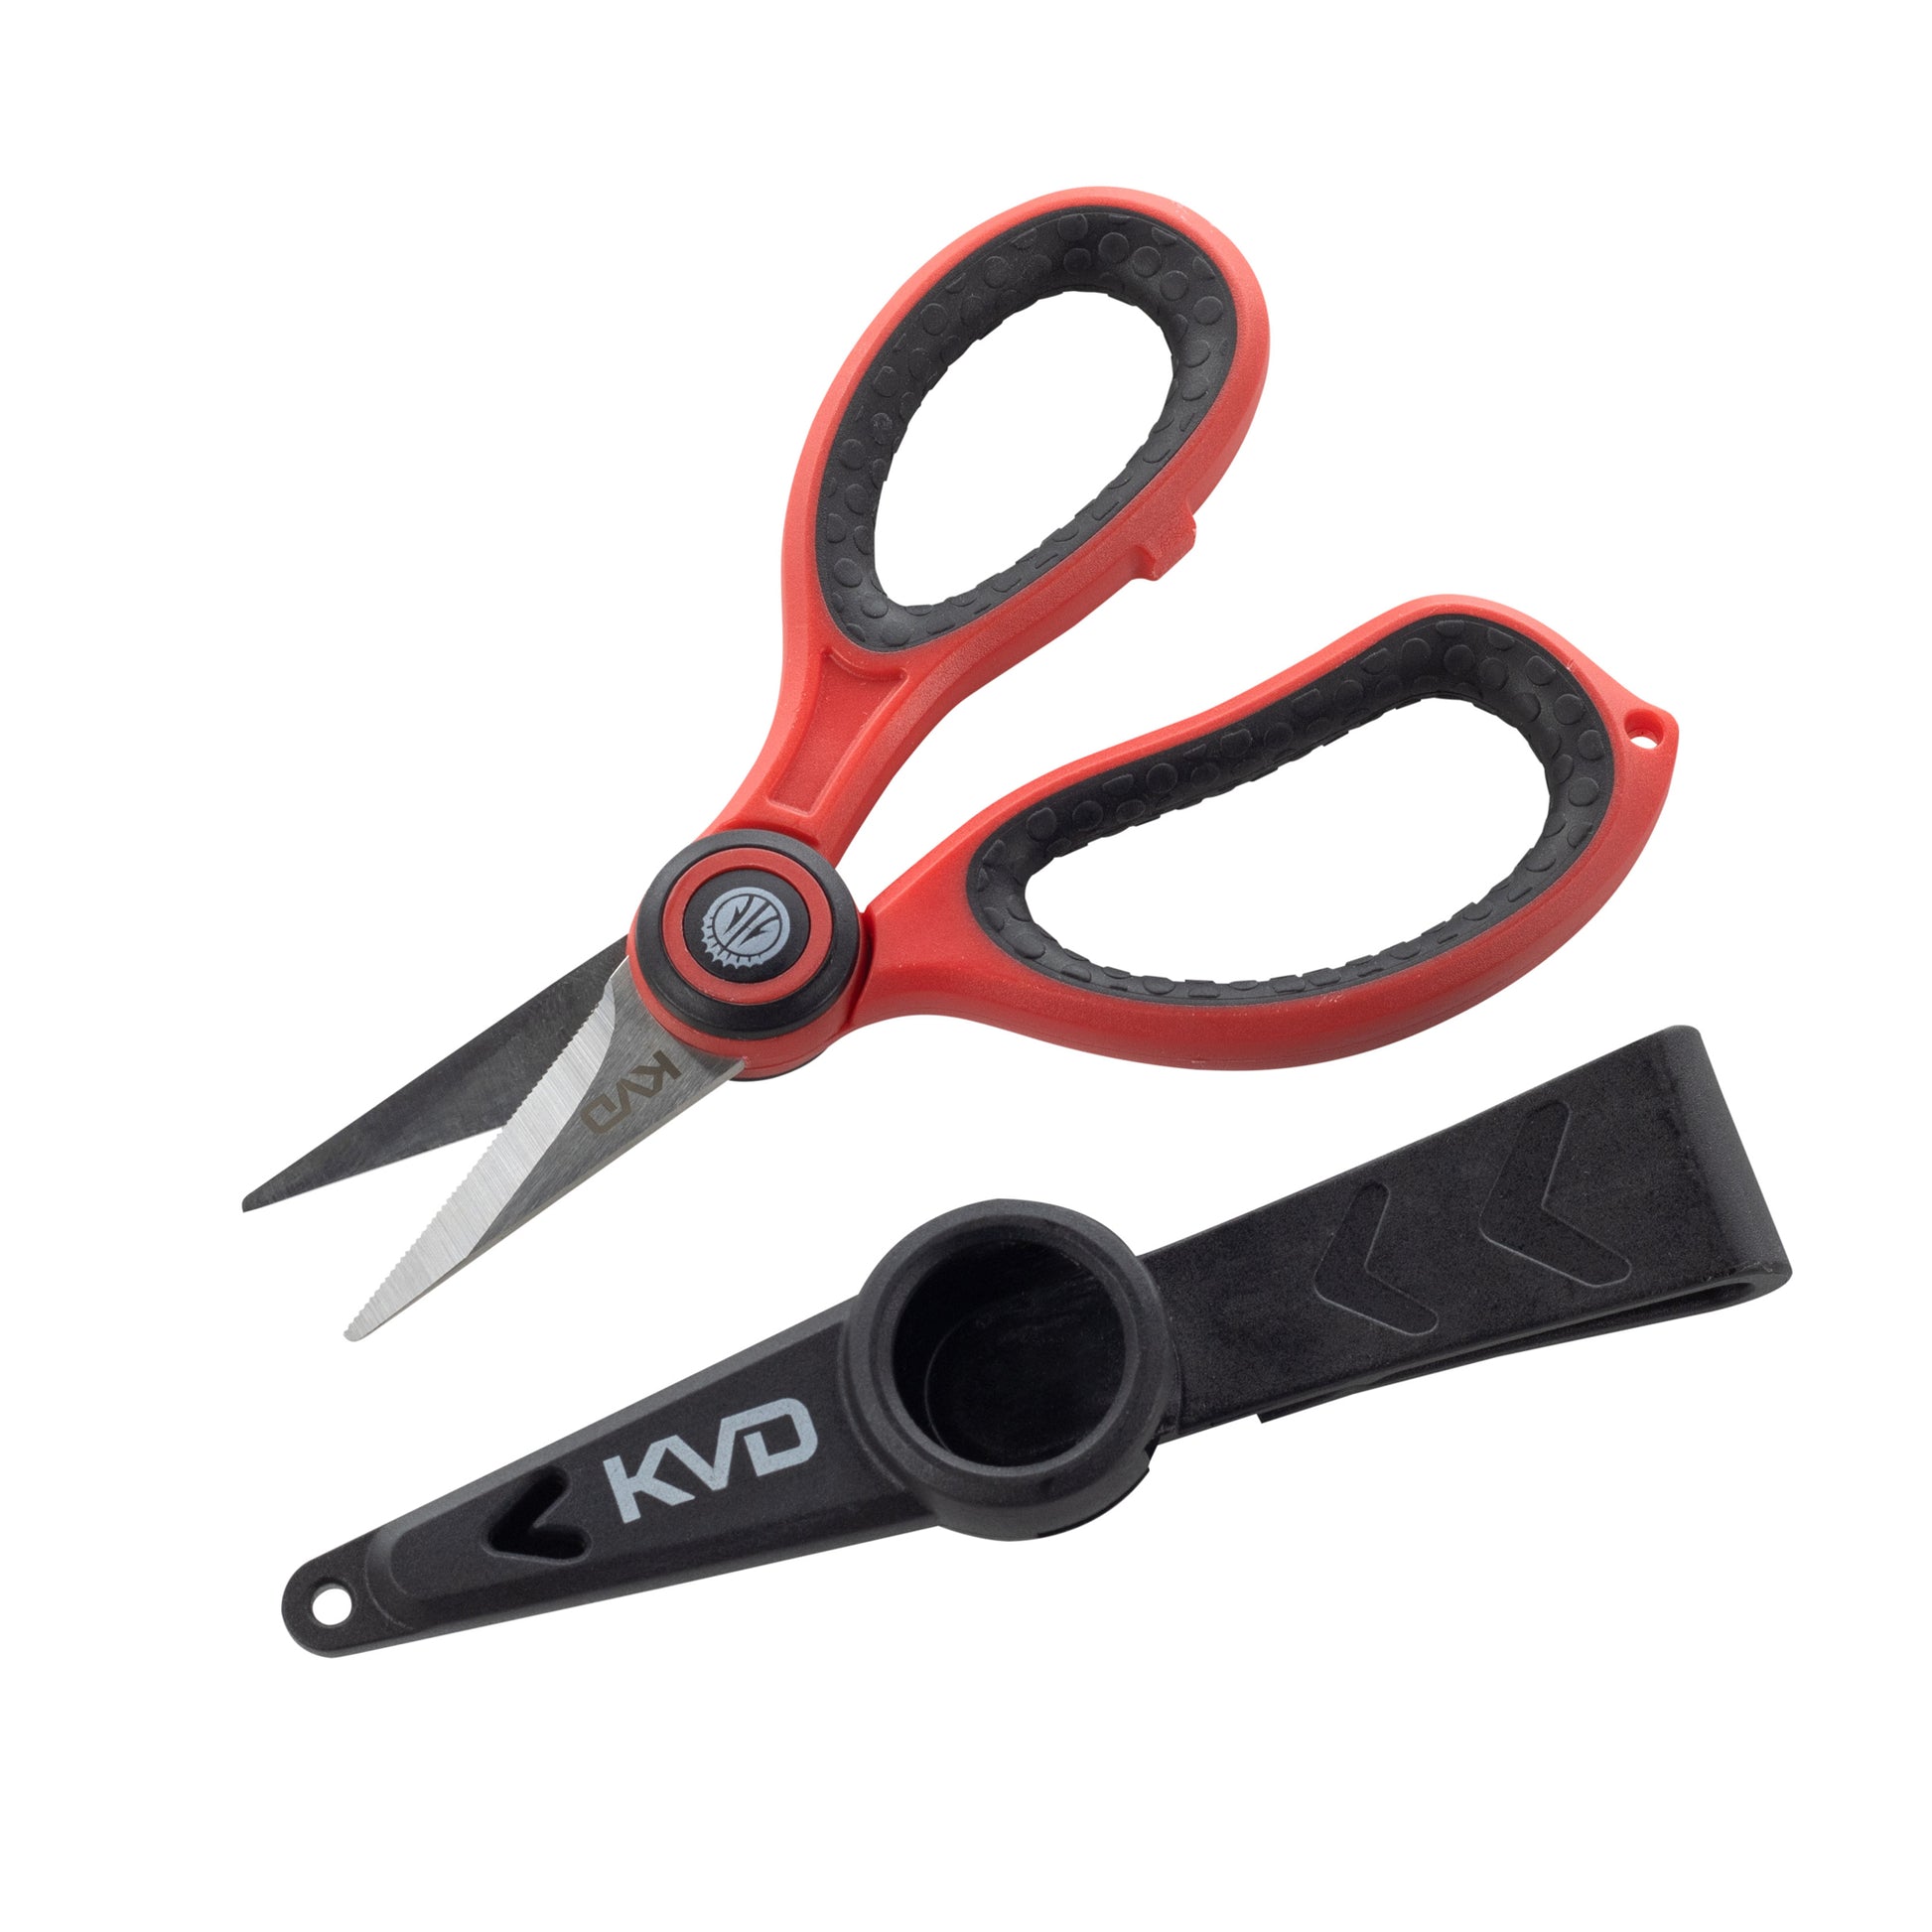 Strike King KVD 5.5 Precision Braid Scissors